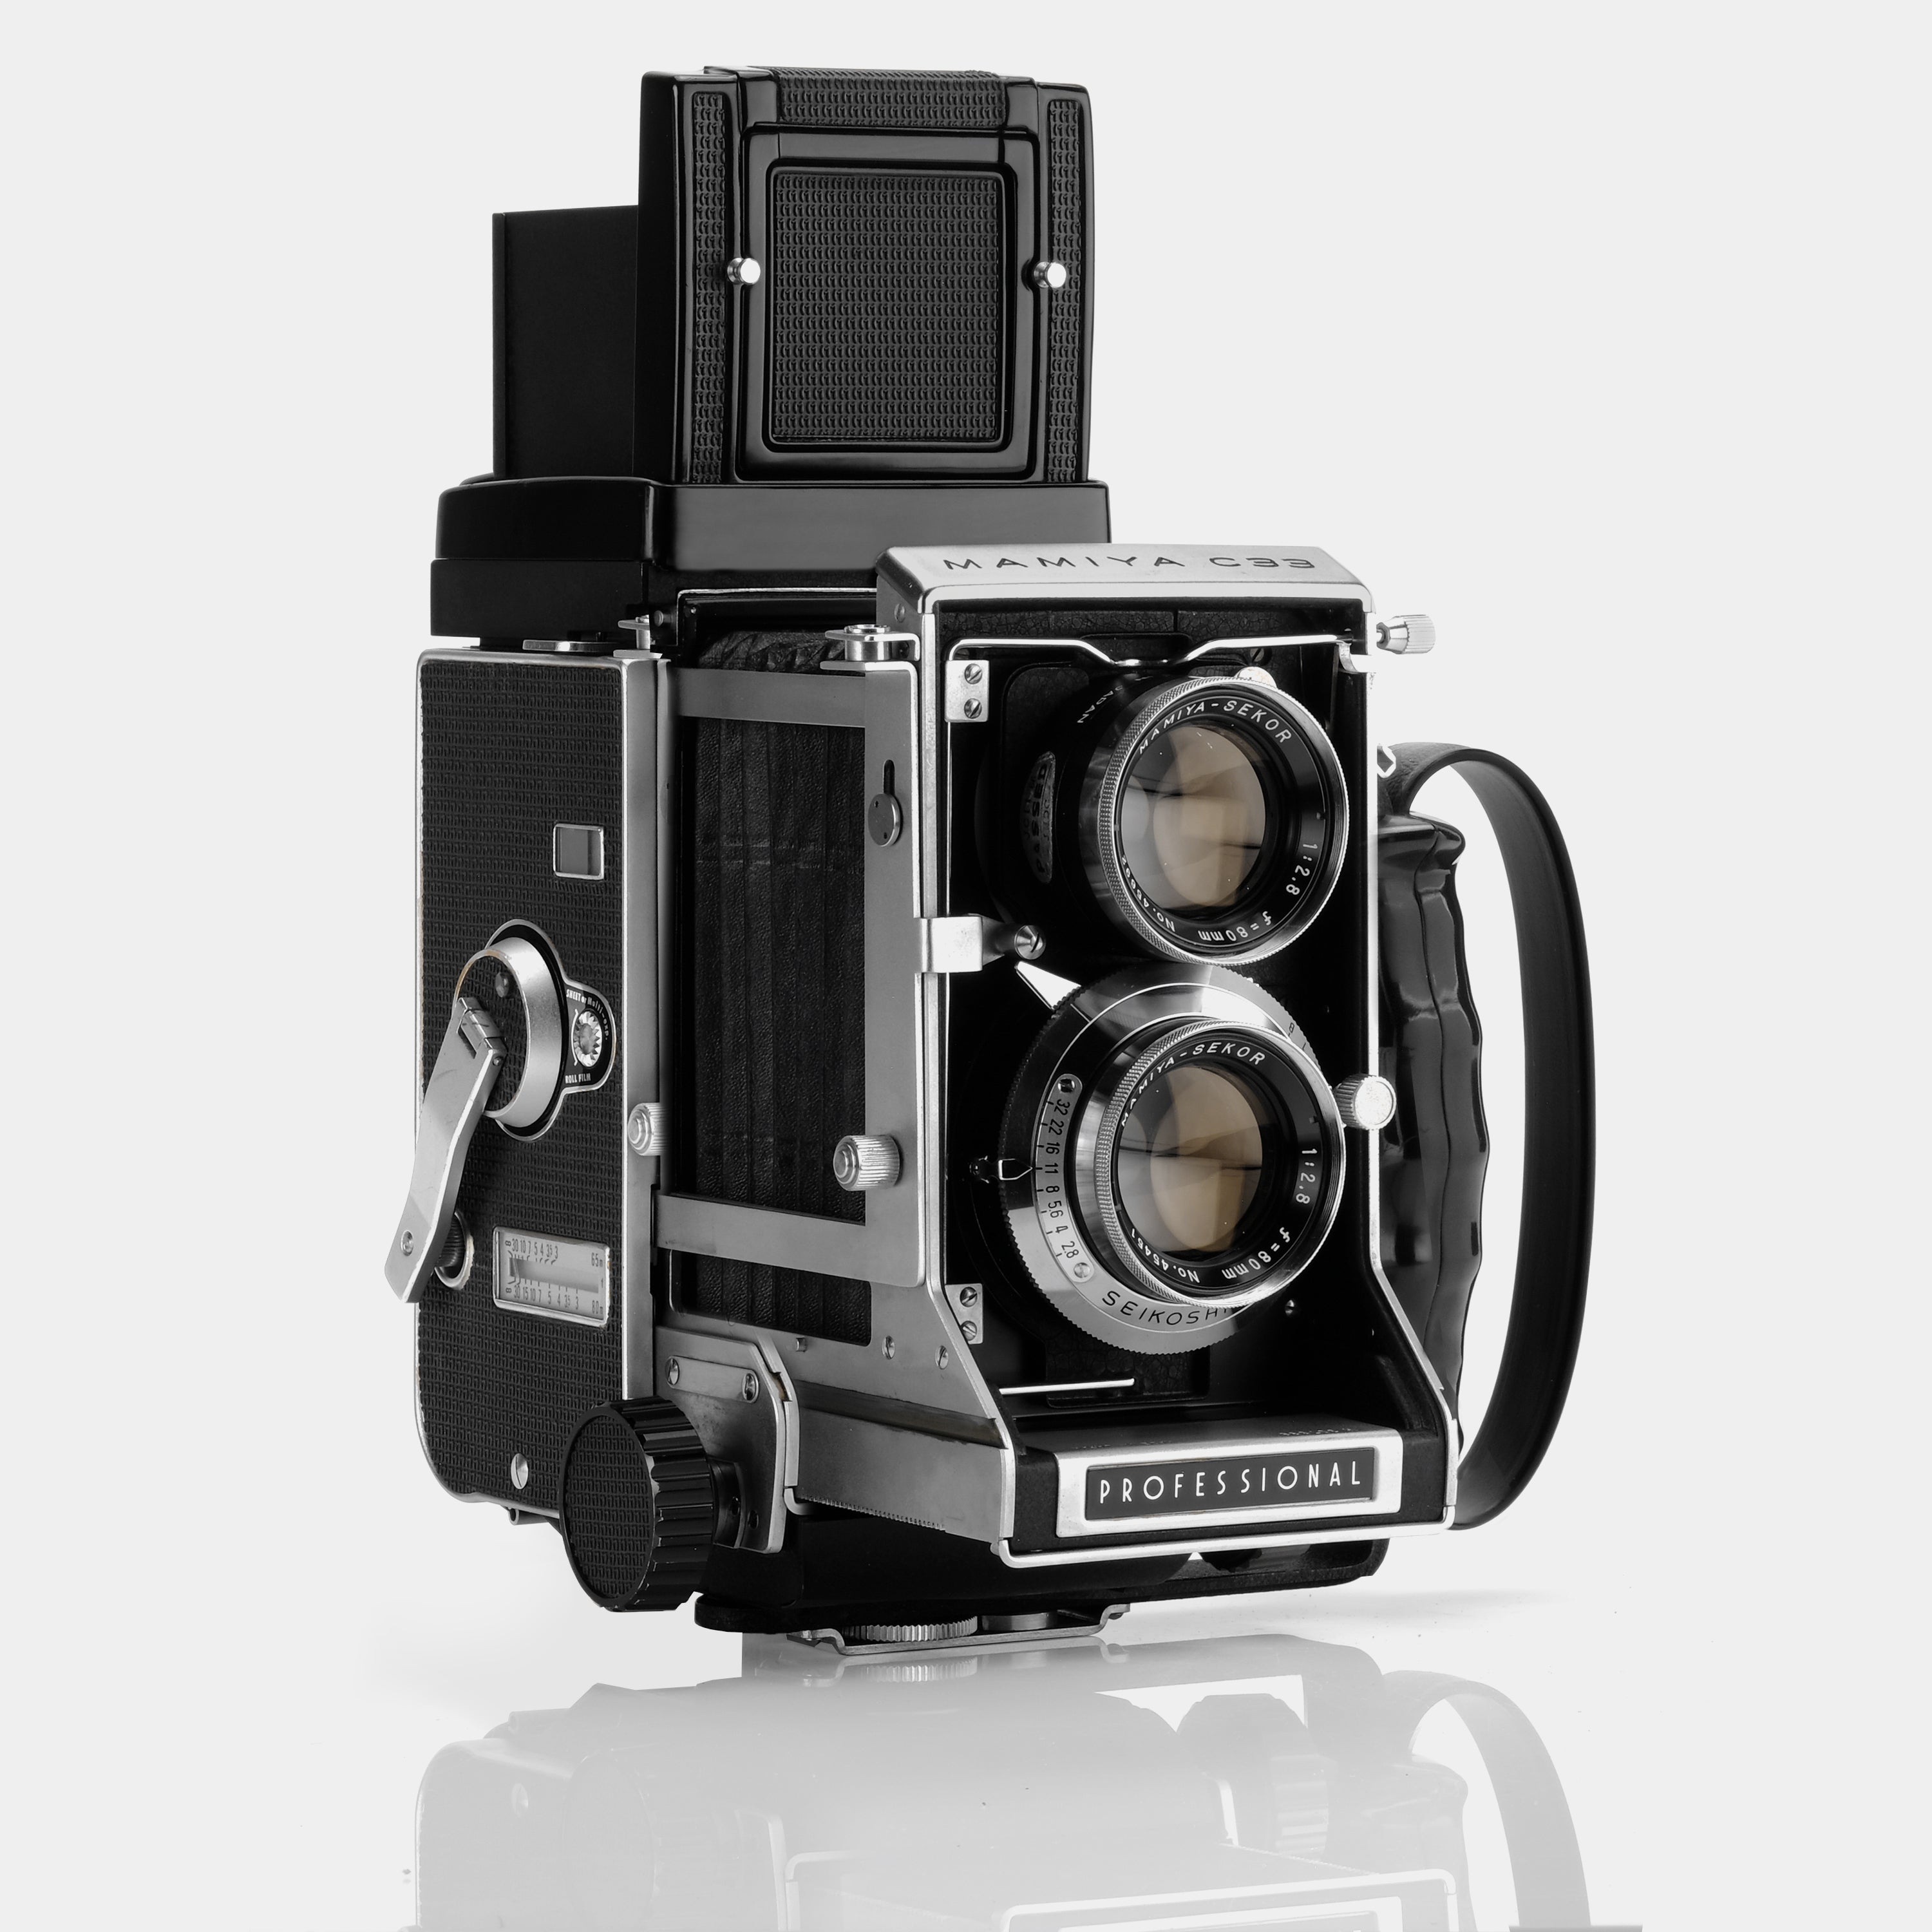 Mamiya C33 Professional Twin Lens Reflex 120 Film Camera